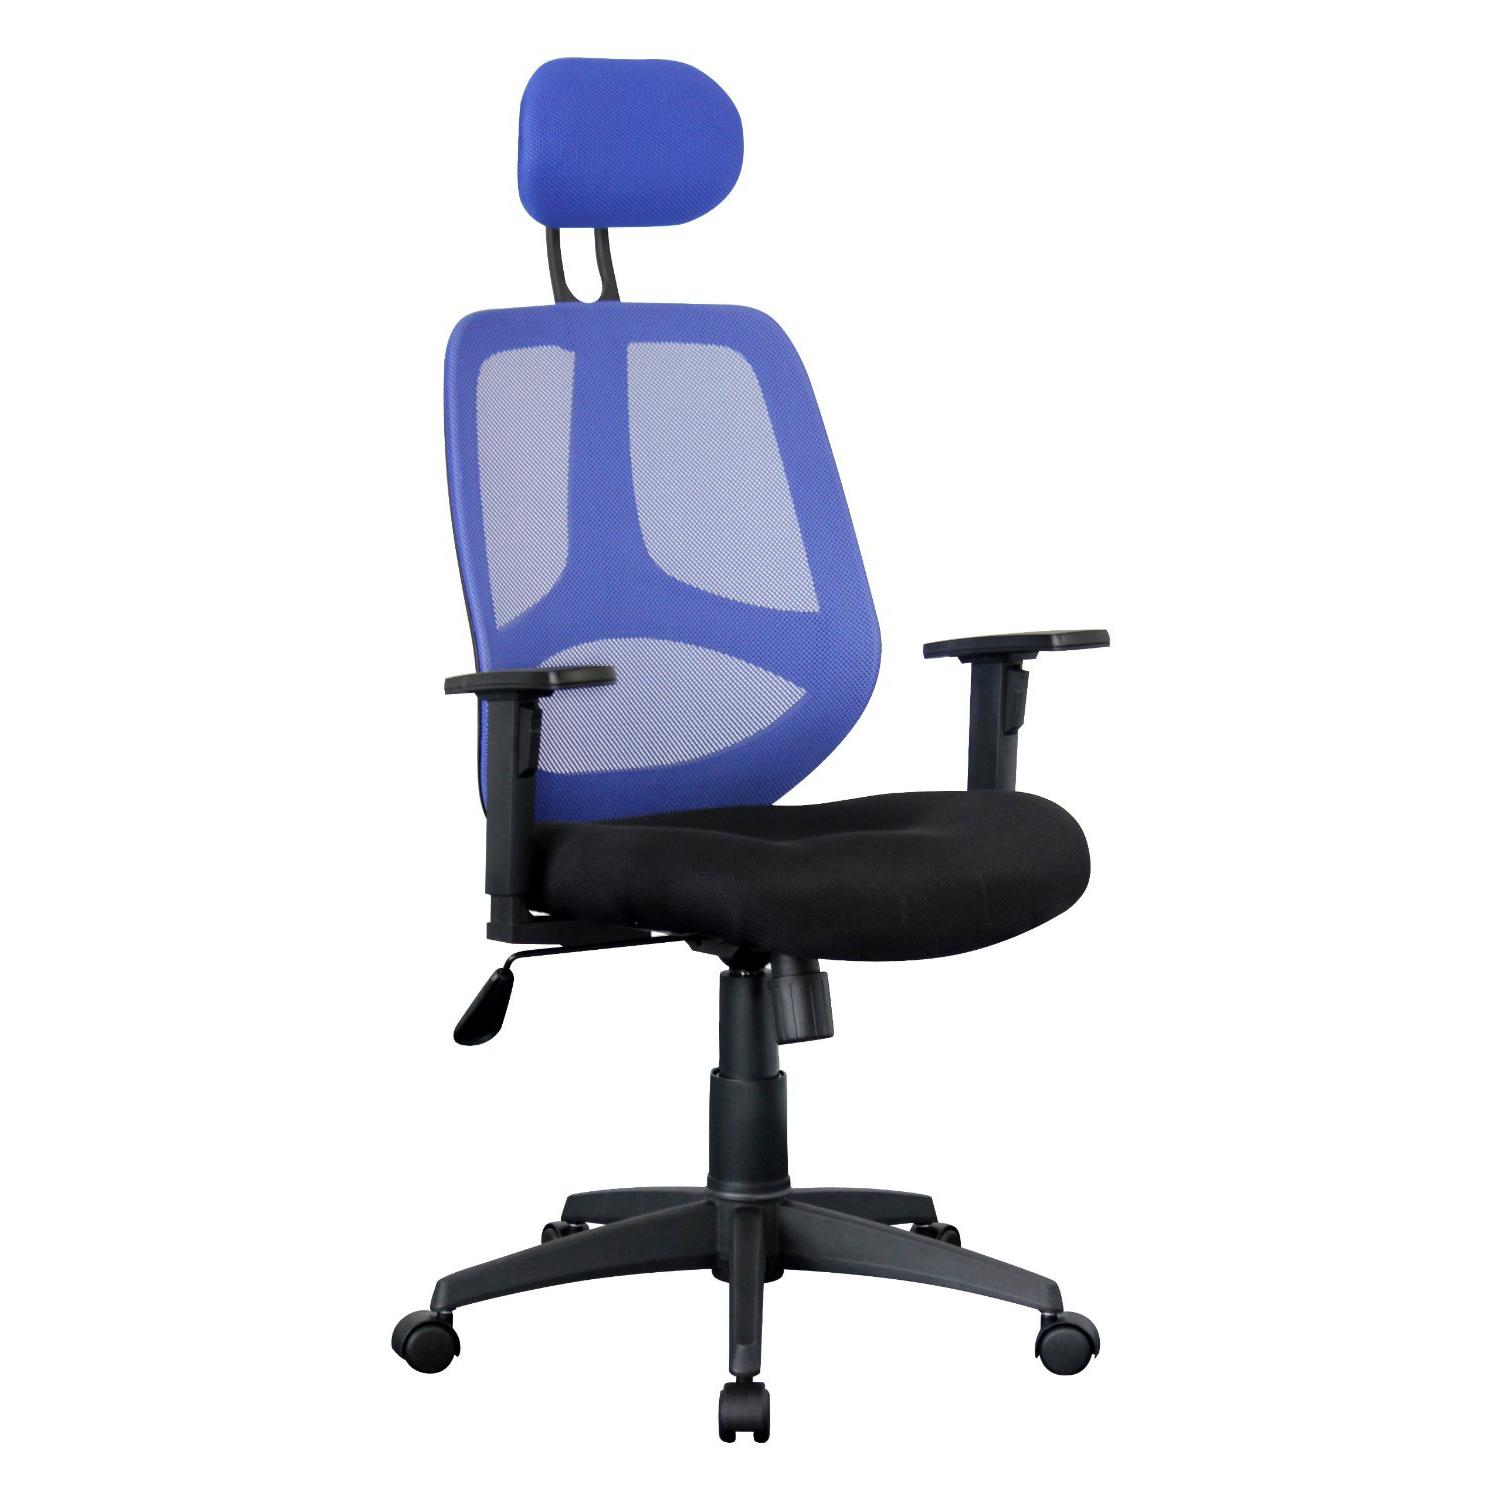 Cadeira Ergonómica DRAKE, Com Apoia Cabeças e braços Reguláveis, em Malha respirável, Em Azul / Preto